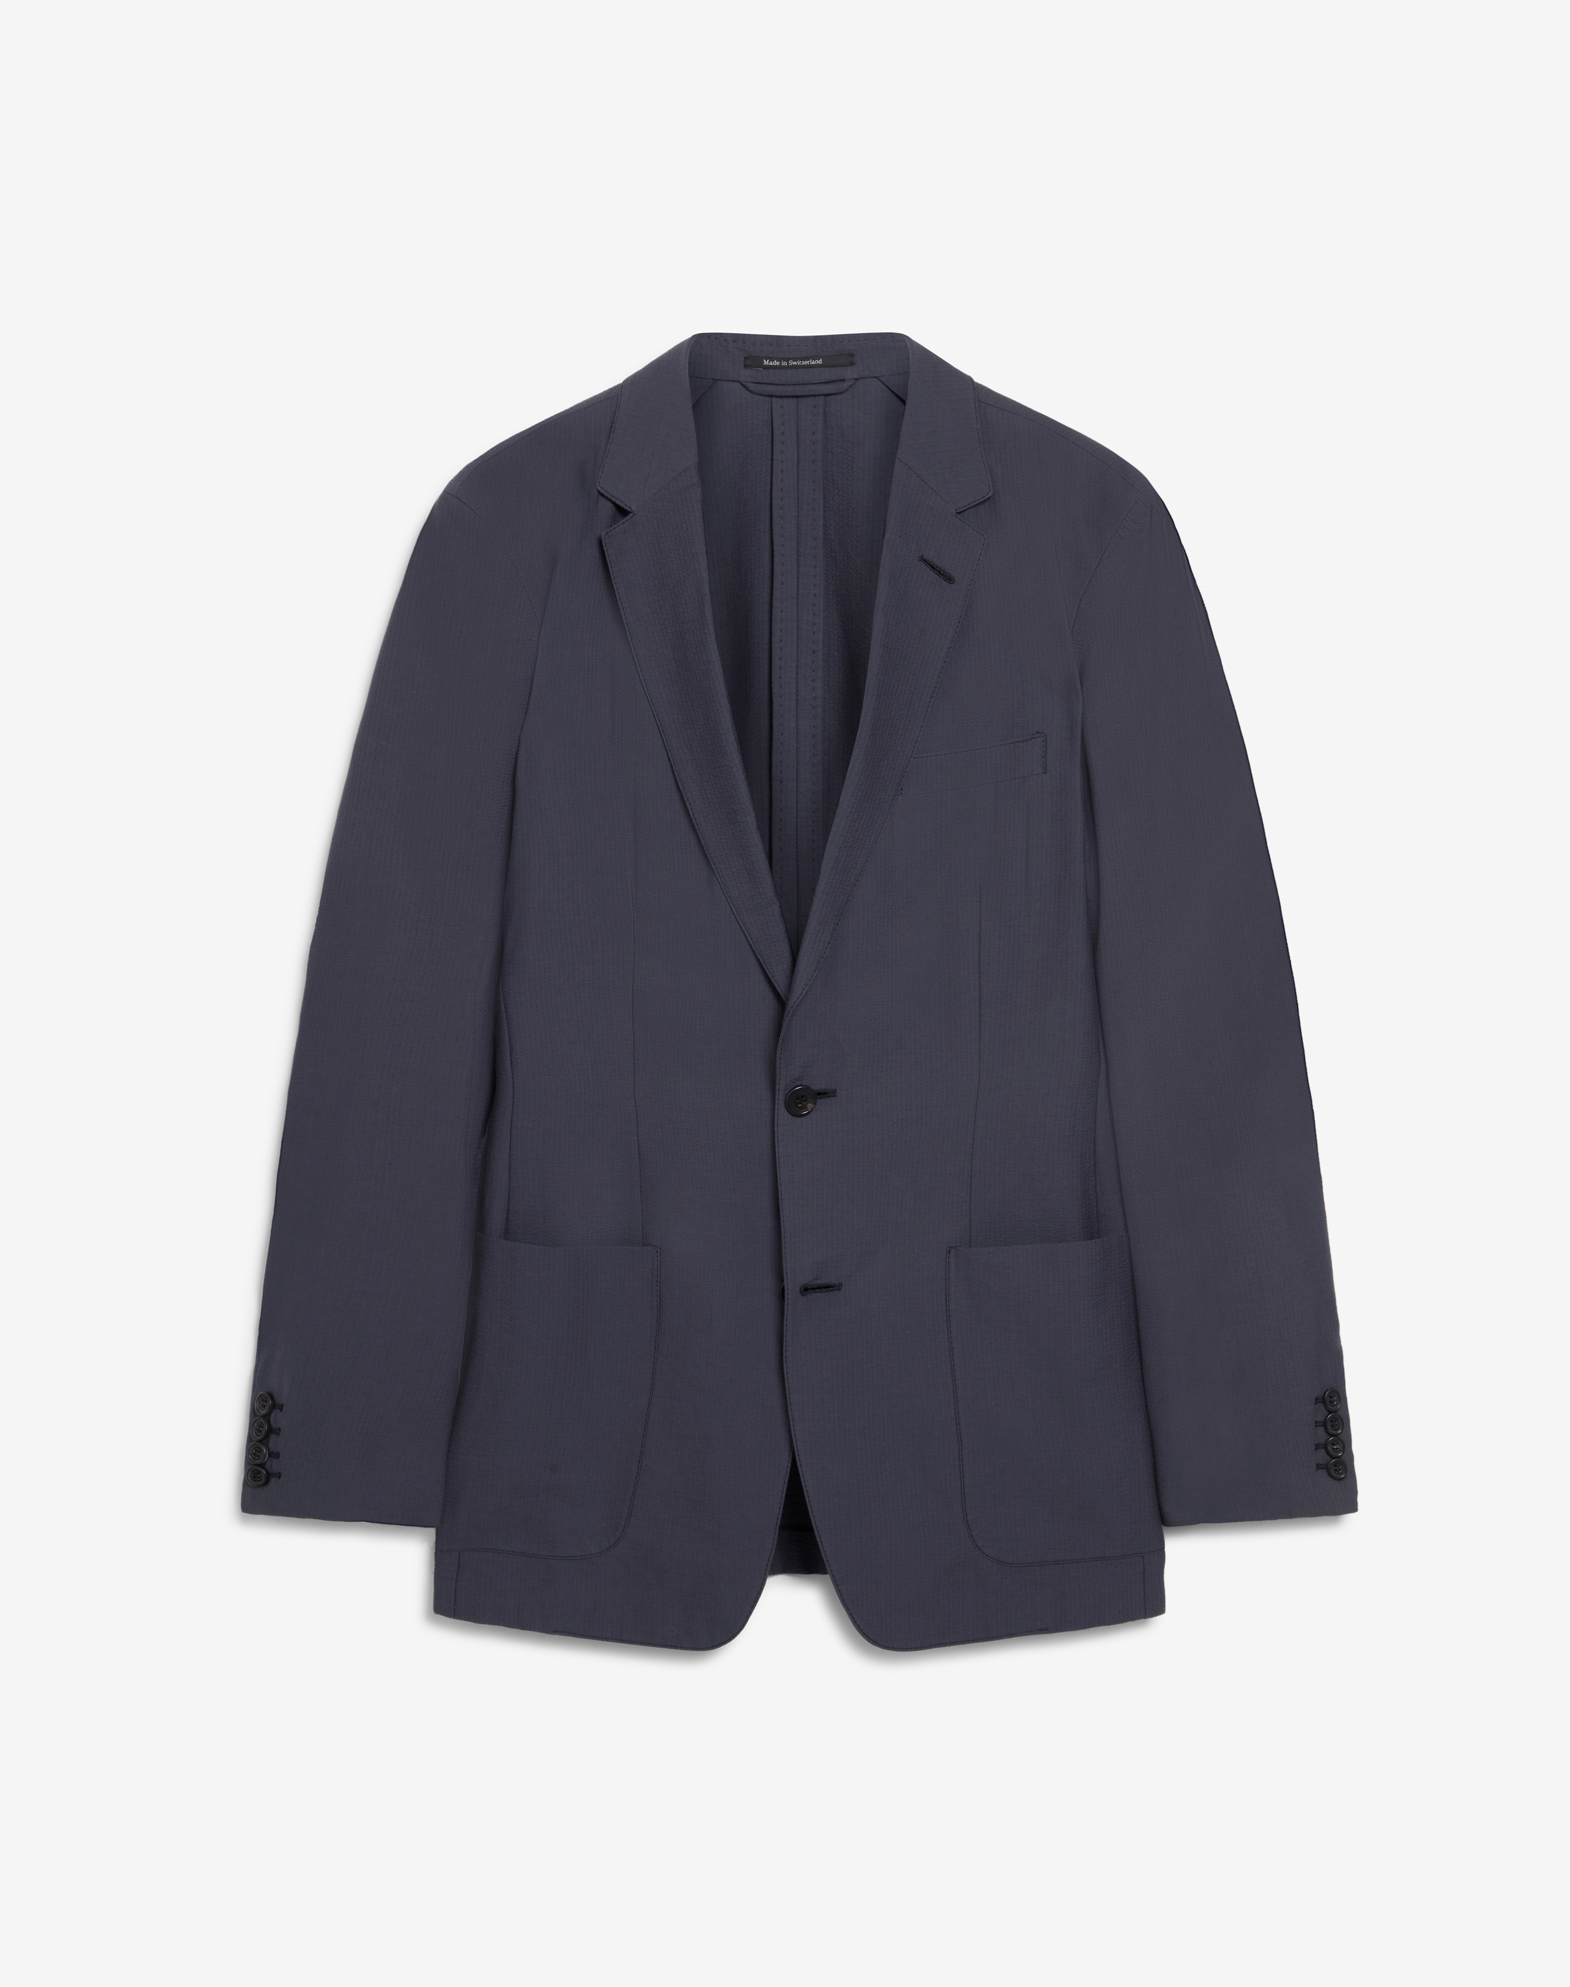 Dunhill Seersucker Mayfair Jacket In Grey